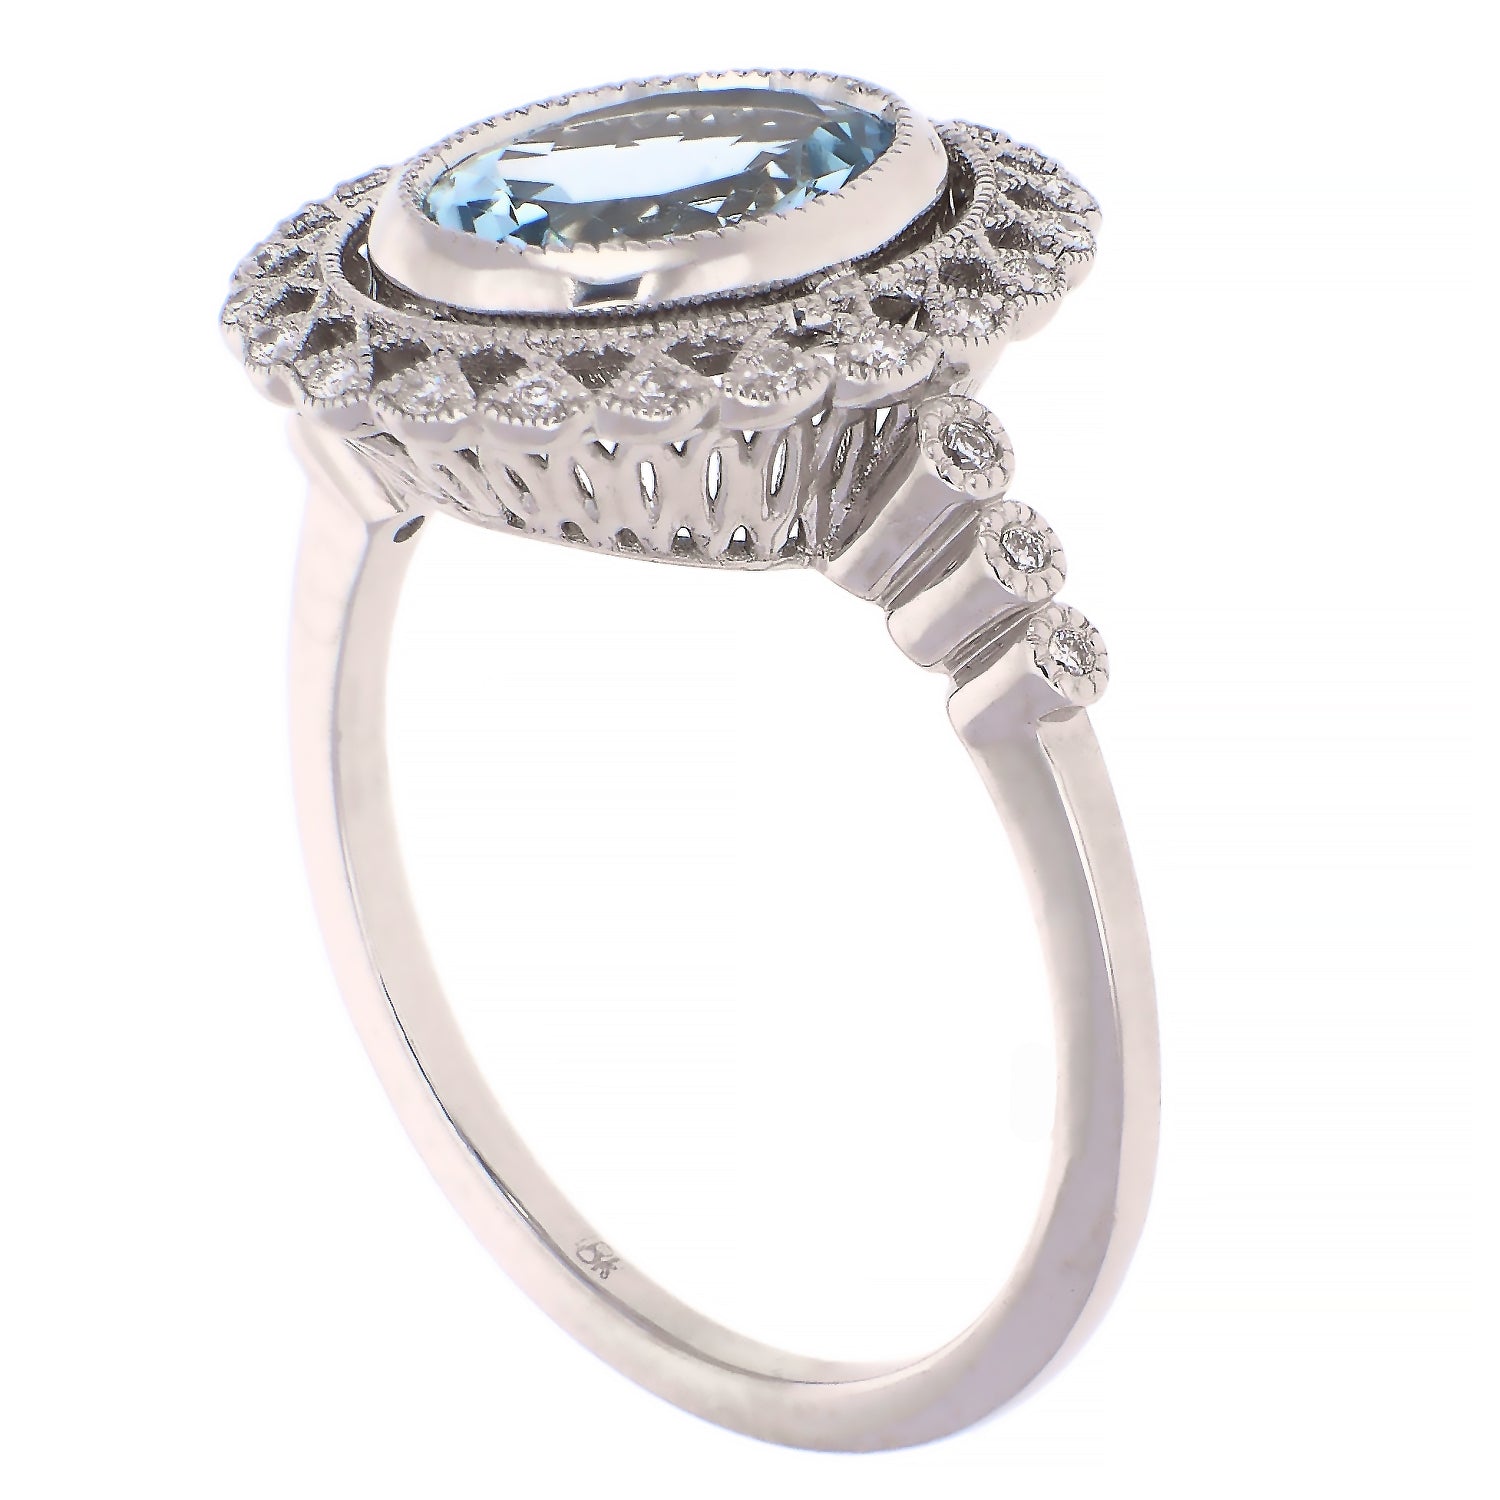 18K White Gold Aquamarine and Diamond Ring